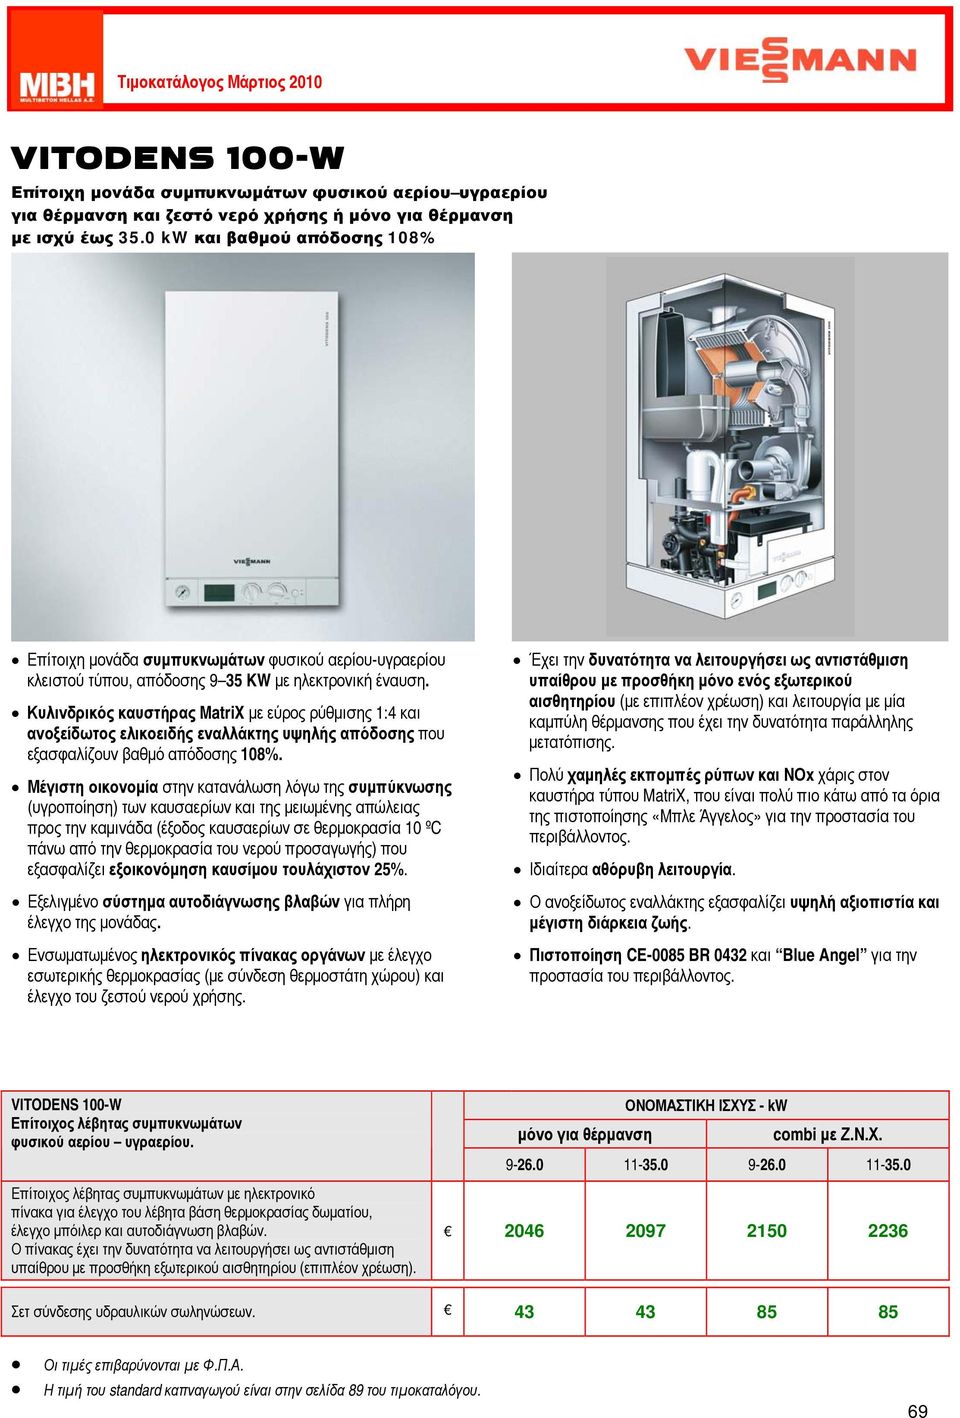 Κυλινδρικός καυστήρας MatriX με εύρος ρύθμισης 1:4 και ανοξείδωτος ελικοειδής εναλλάκτης υψηλής απόδοσης που εξασφαλίζουν βαθμό απόδοσης 108%.